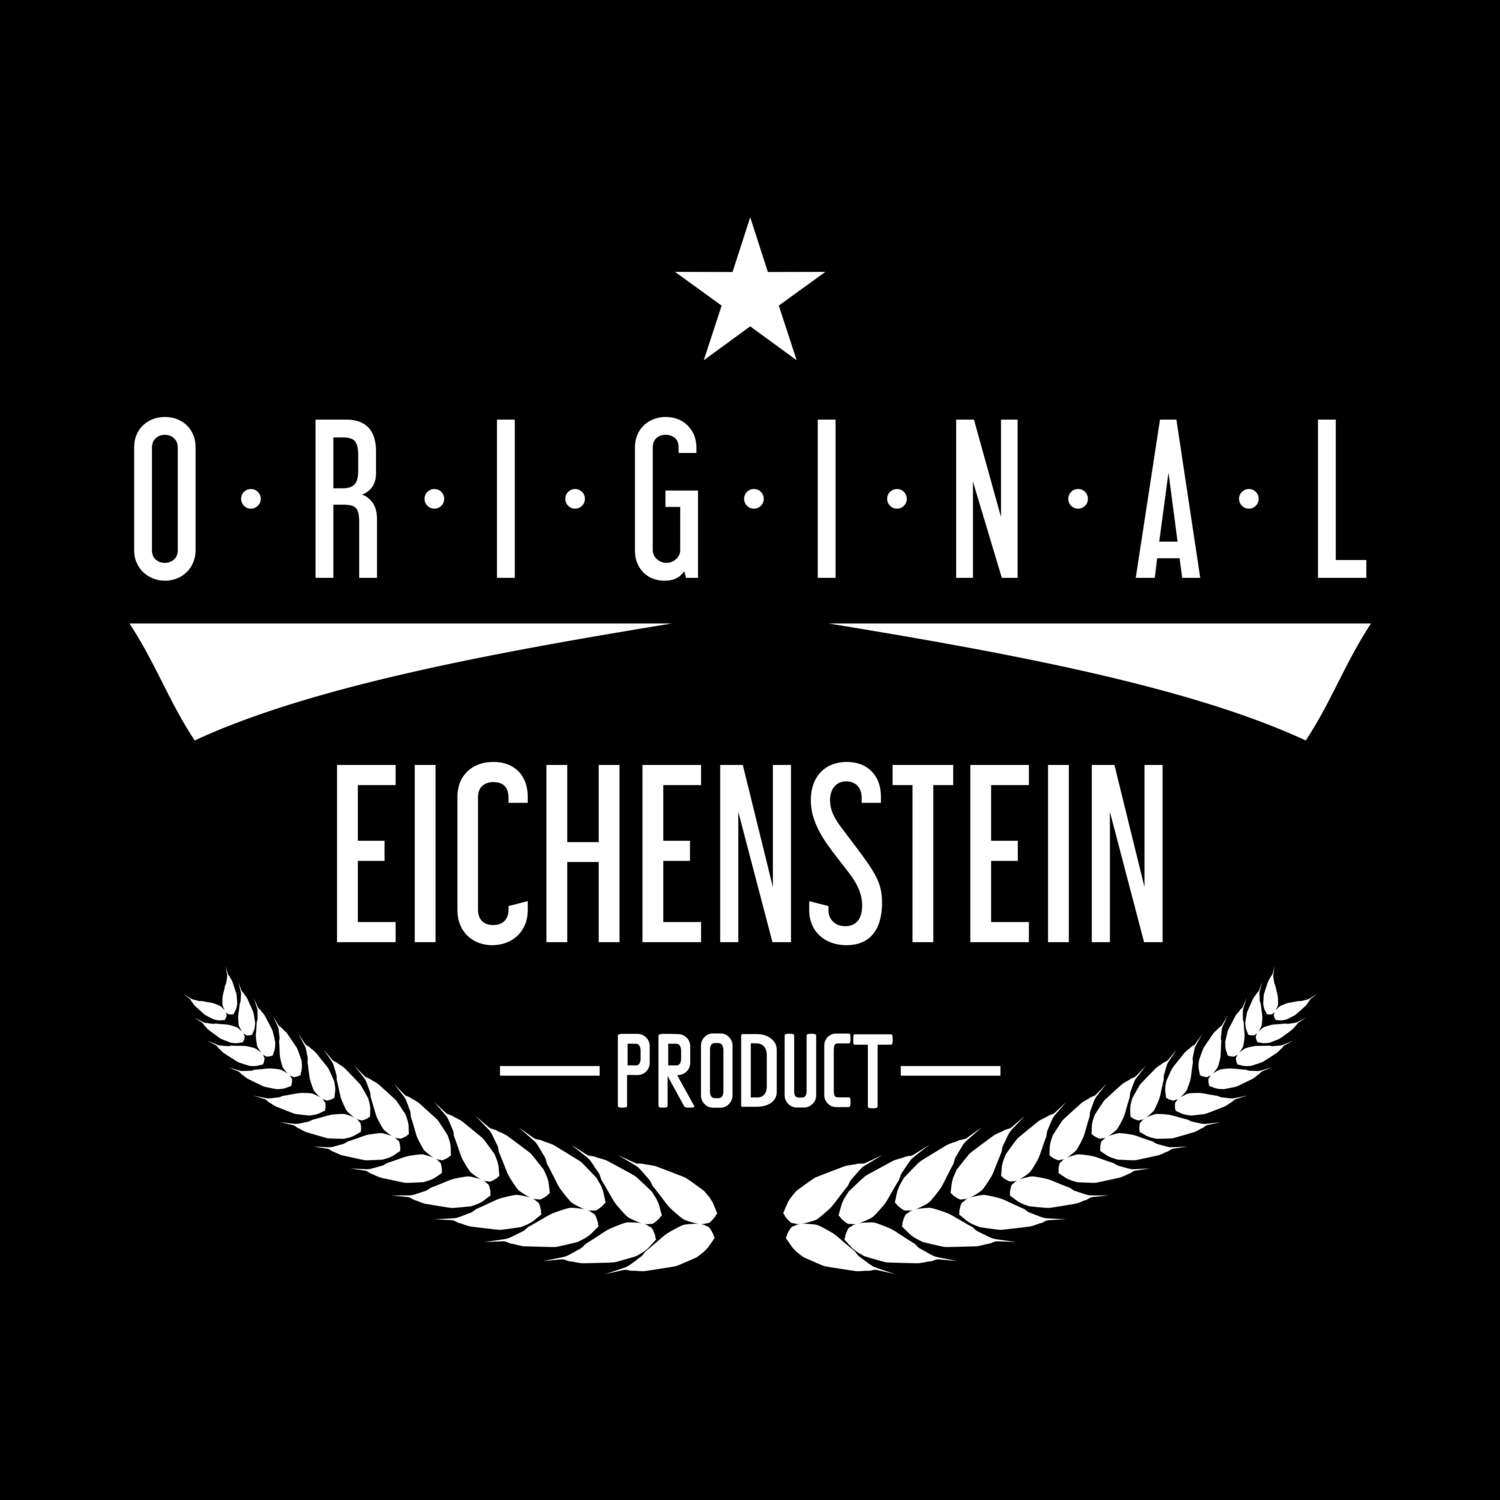 Eichenstein T-Shirt »Original Product«